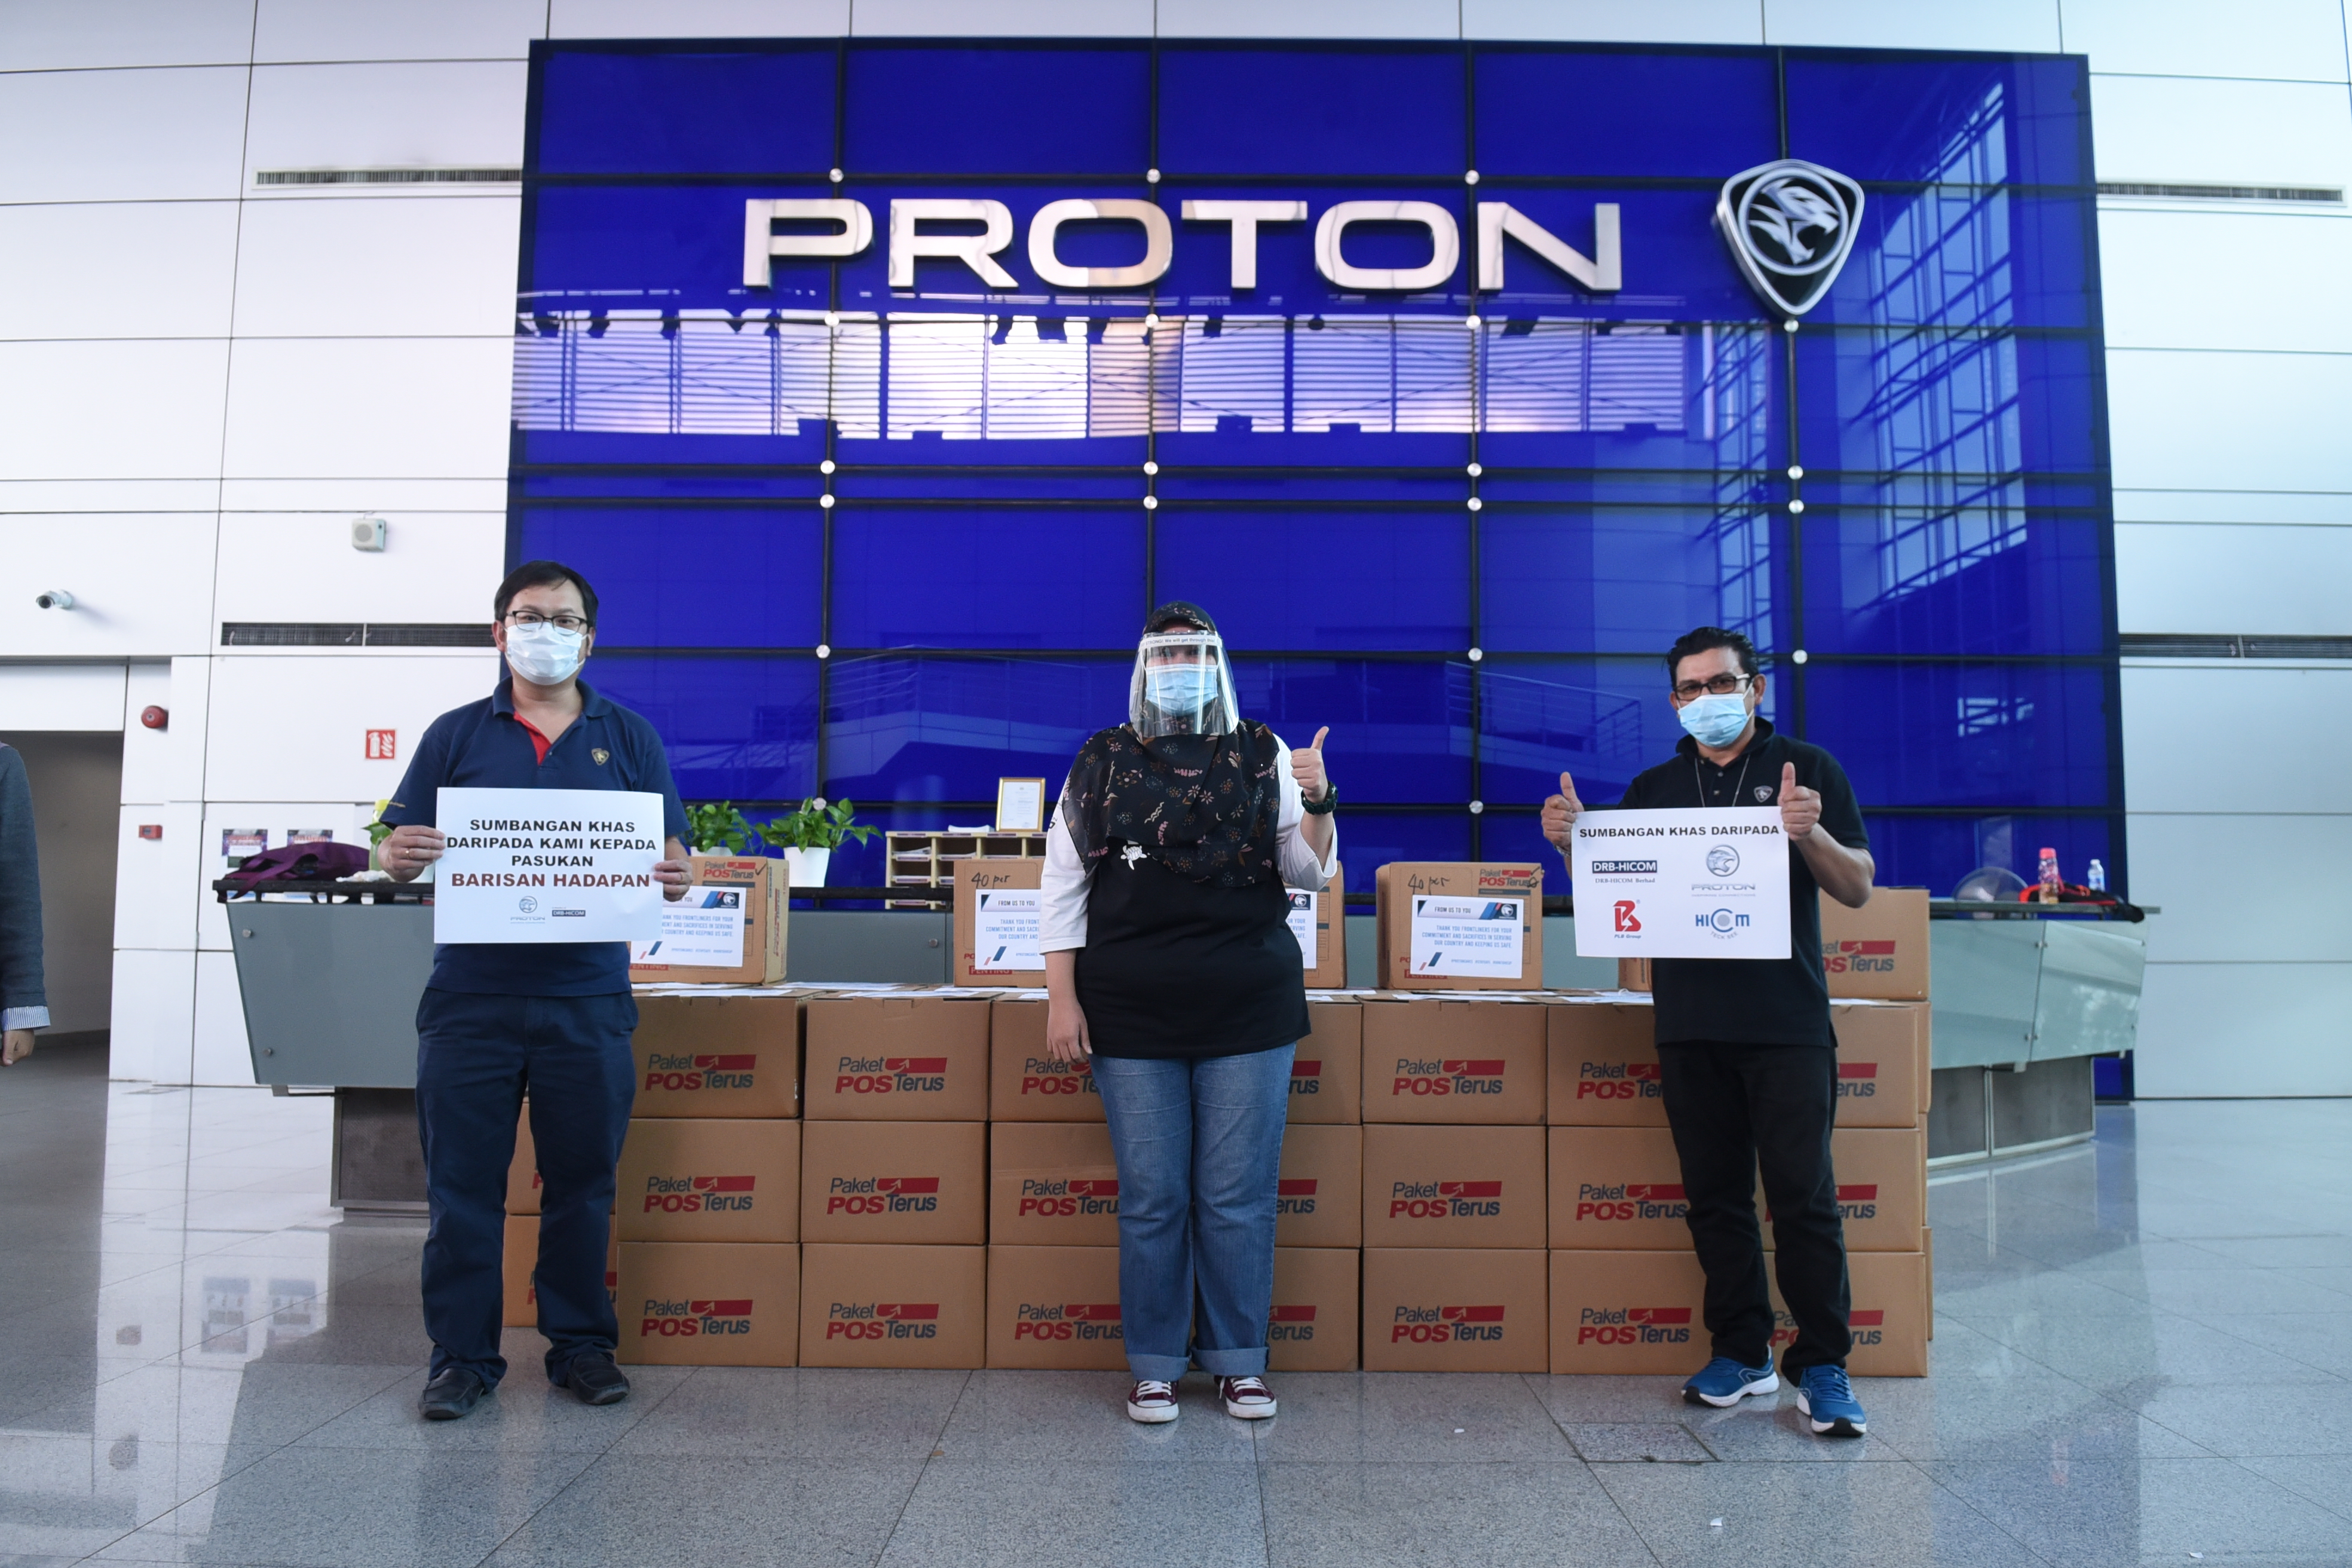 Proton mula edar pelindung muka kepada petugas kesihatan barisan hadapan untuk perangi Covid-19